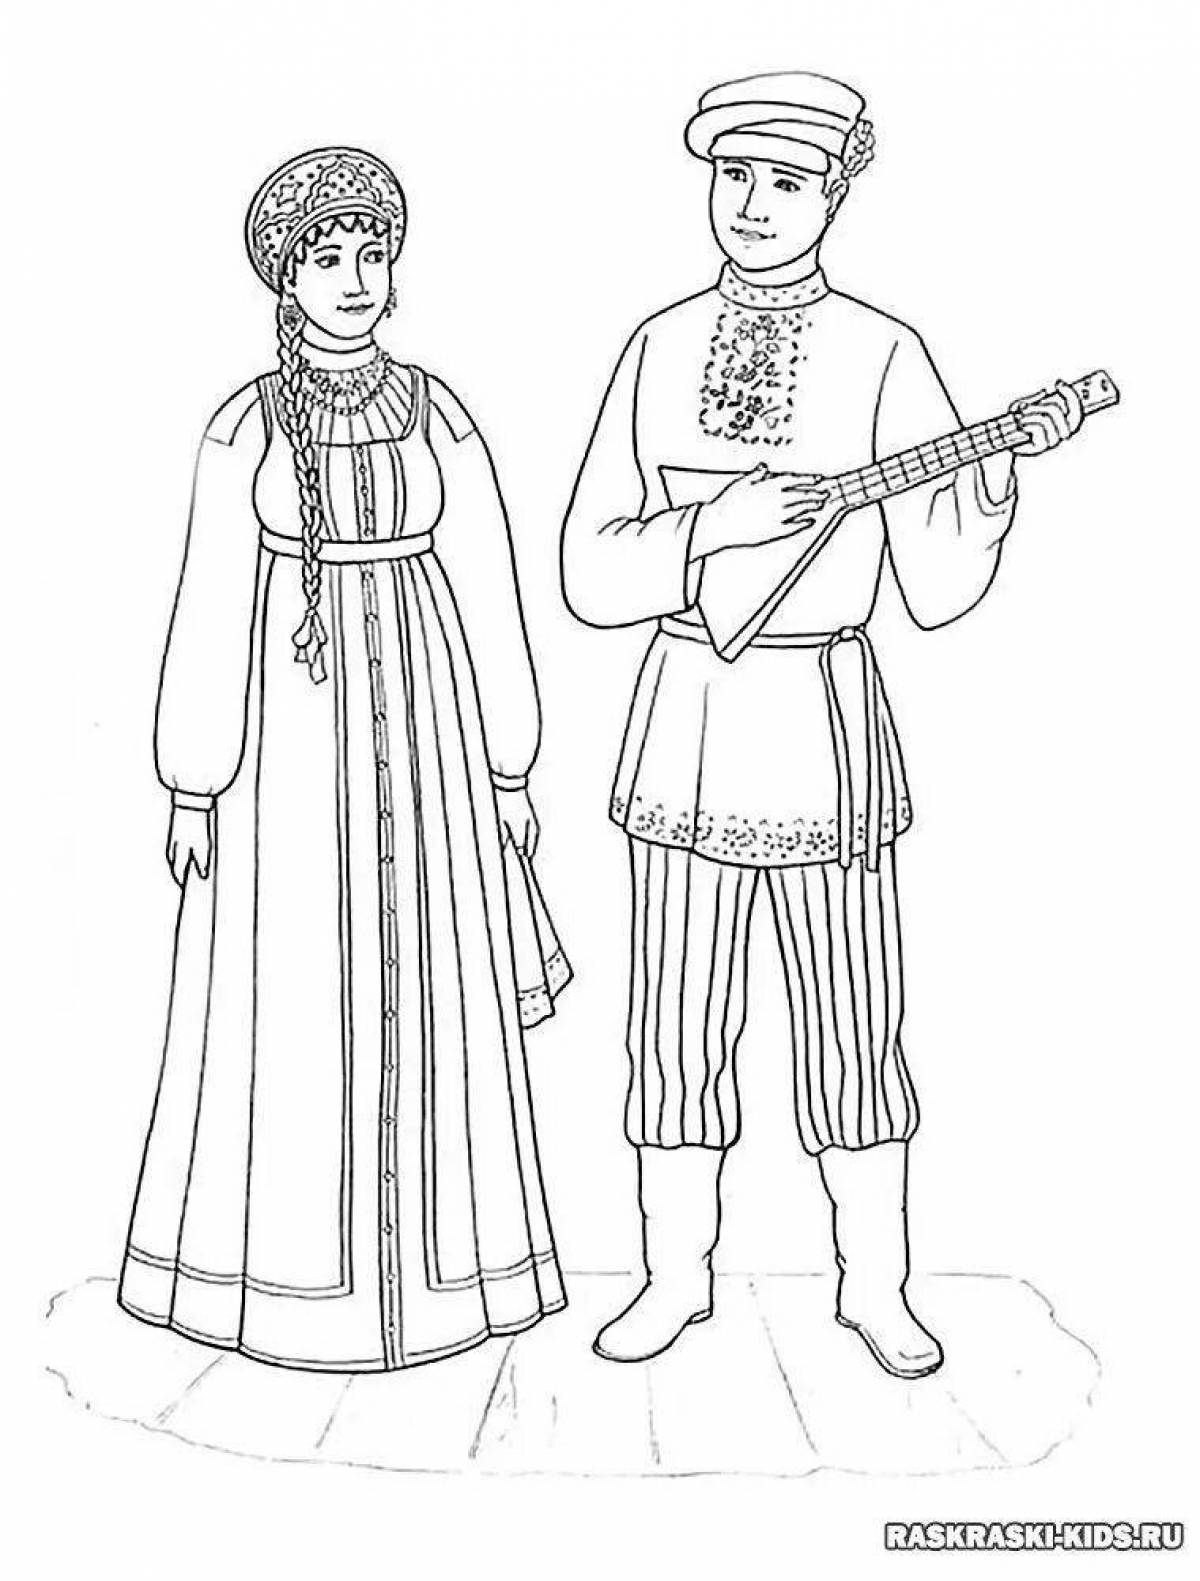 Традиционные костюмы русских людей